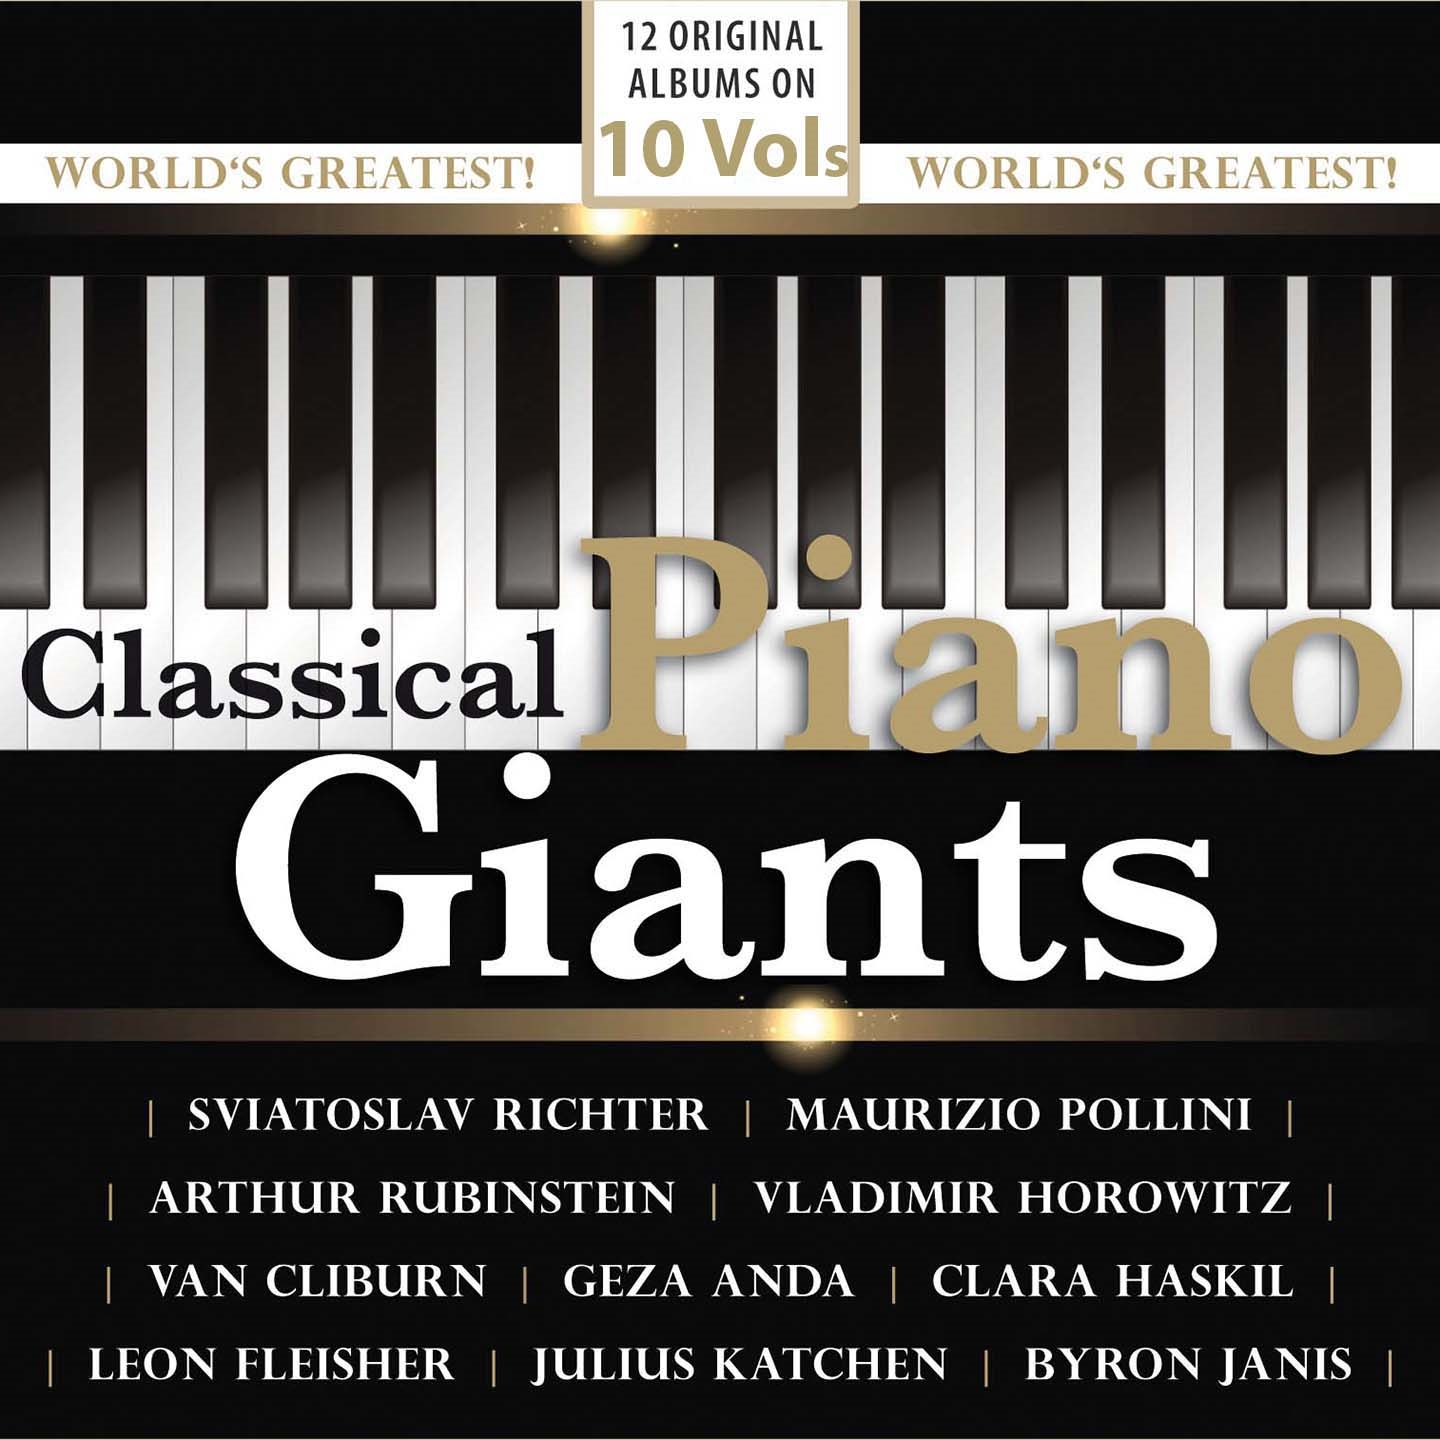 CLASSICAL PIANO GIANTS - 12 ORIGINAL ALBUMS